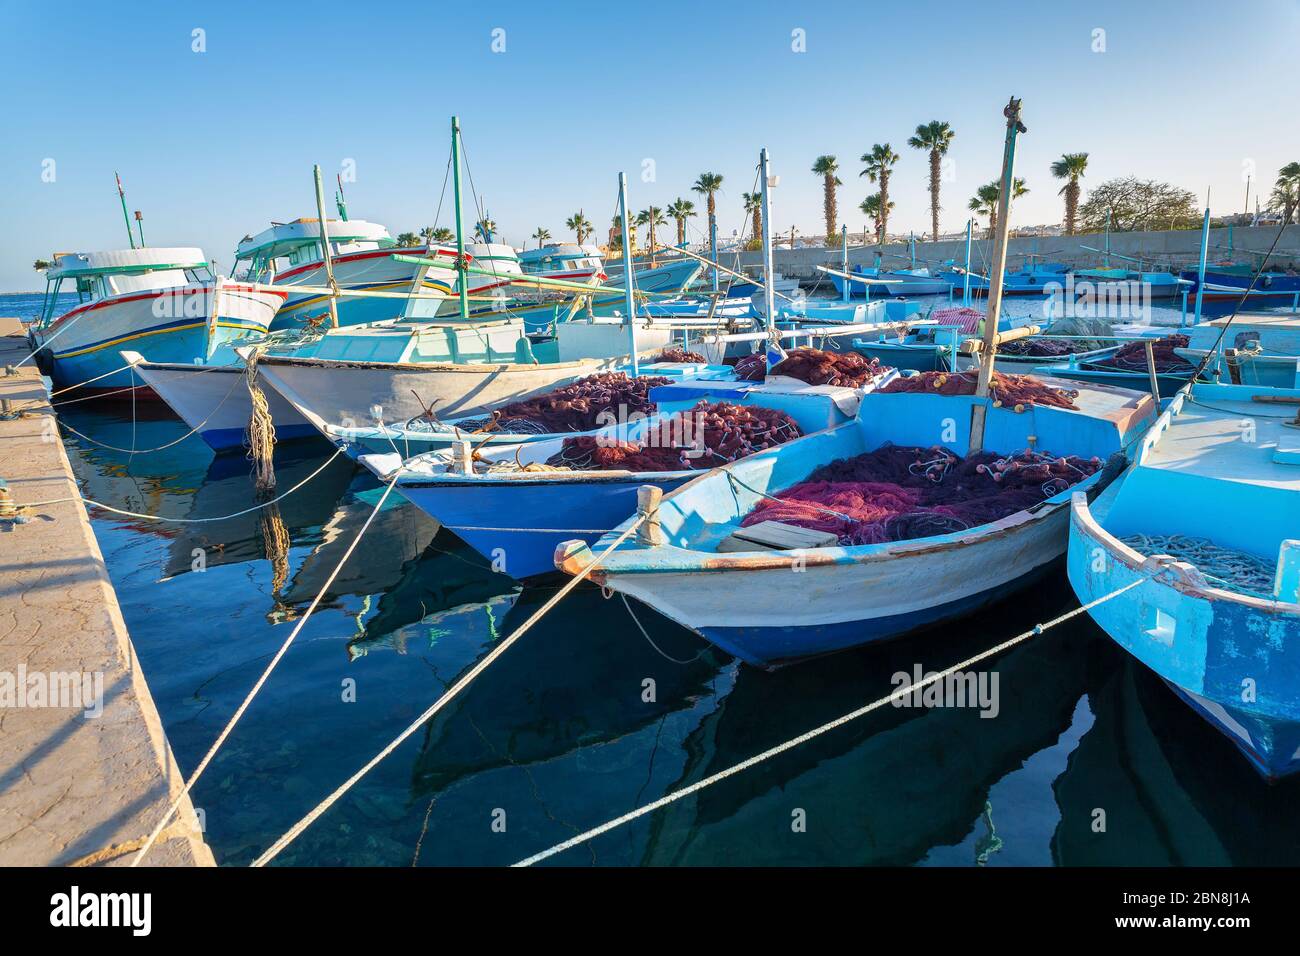 De nombreux bateaux de pêche se trouvent dans le port d'Hurghada en Égypte Banque D'Images